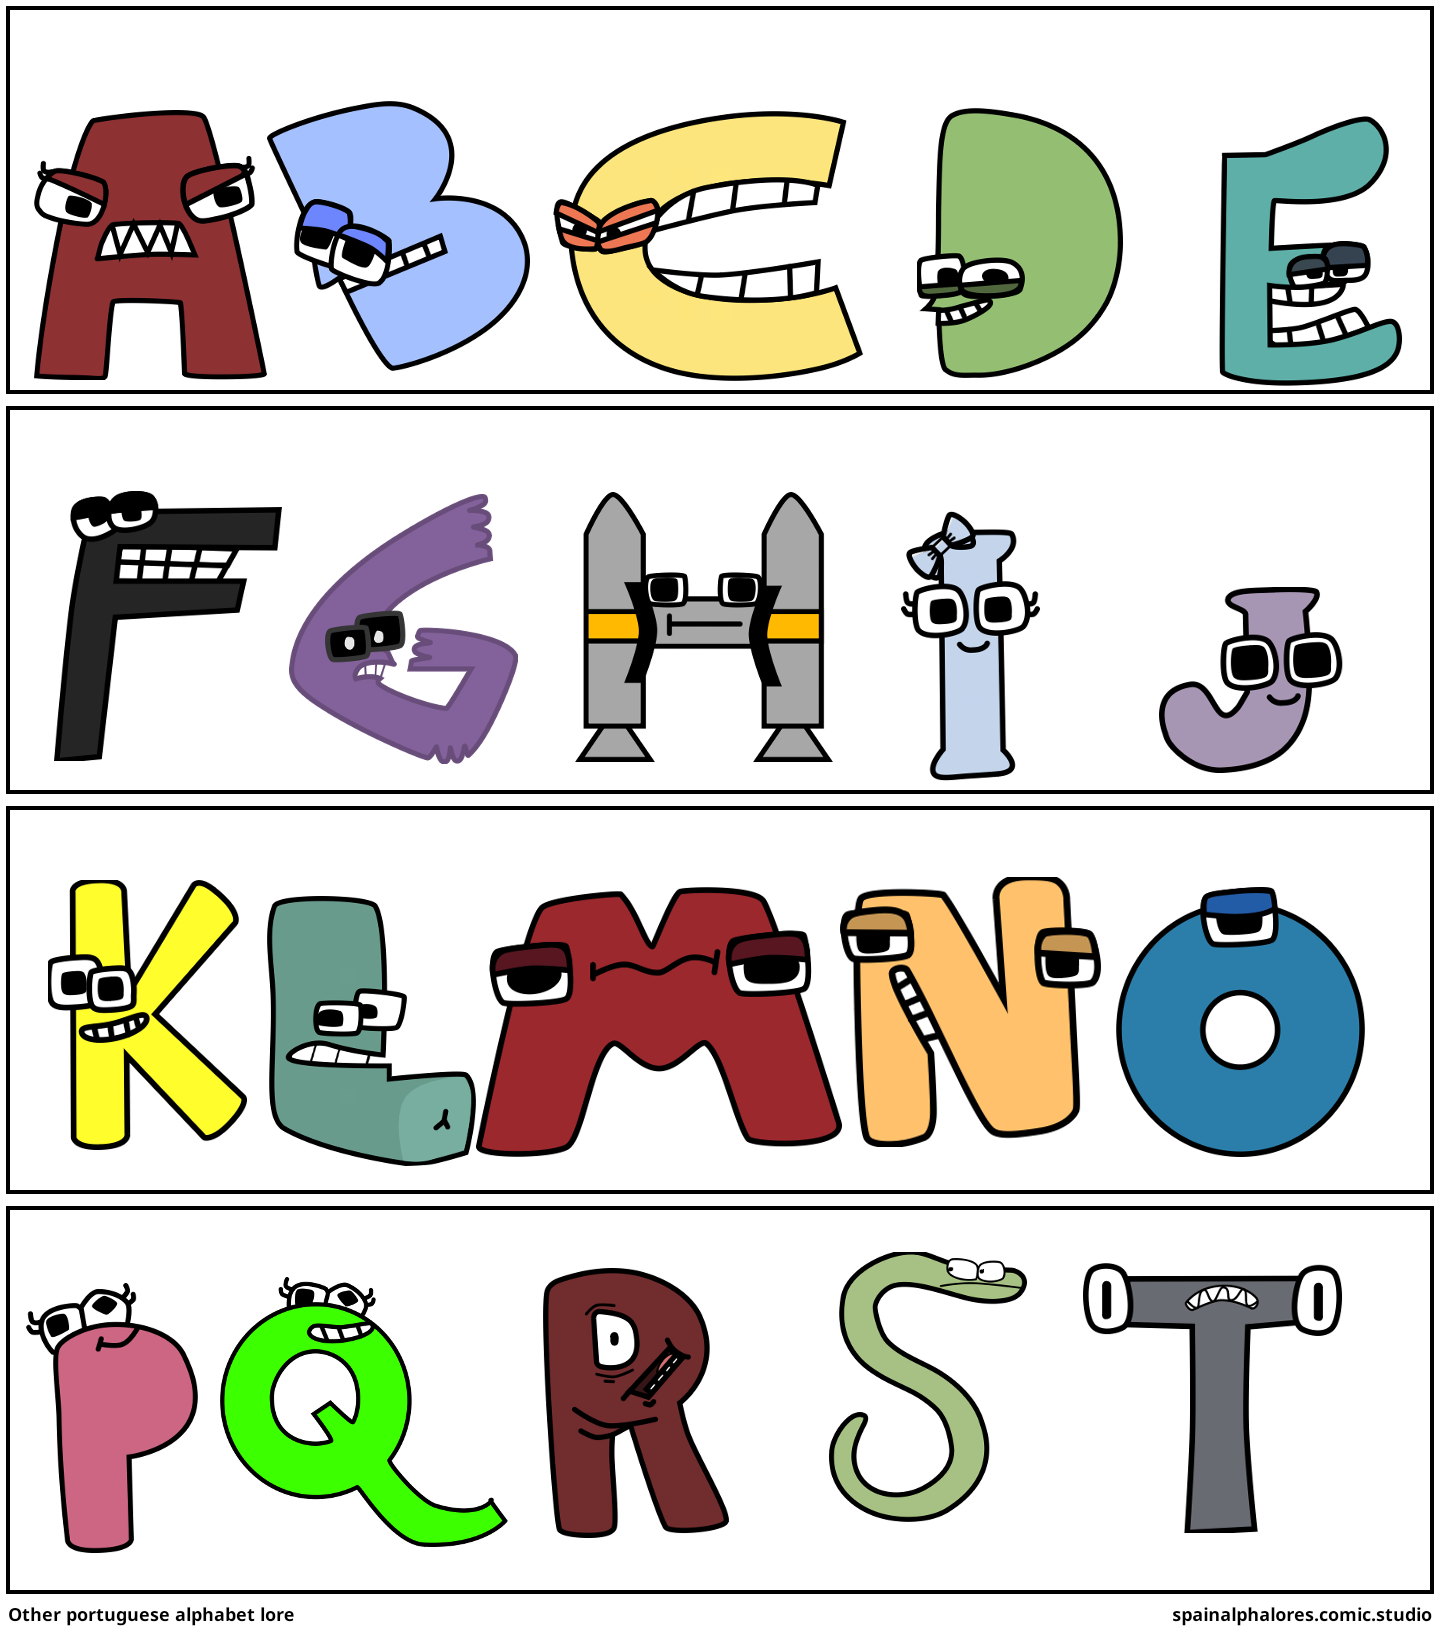 Alphabet lore but portuguese (part 1 A-F) - Comic Studio